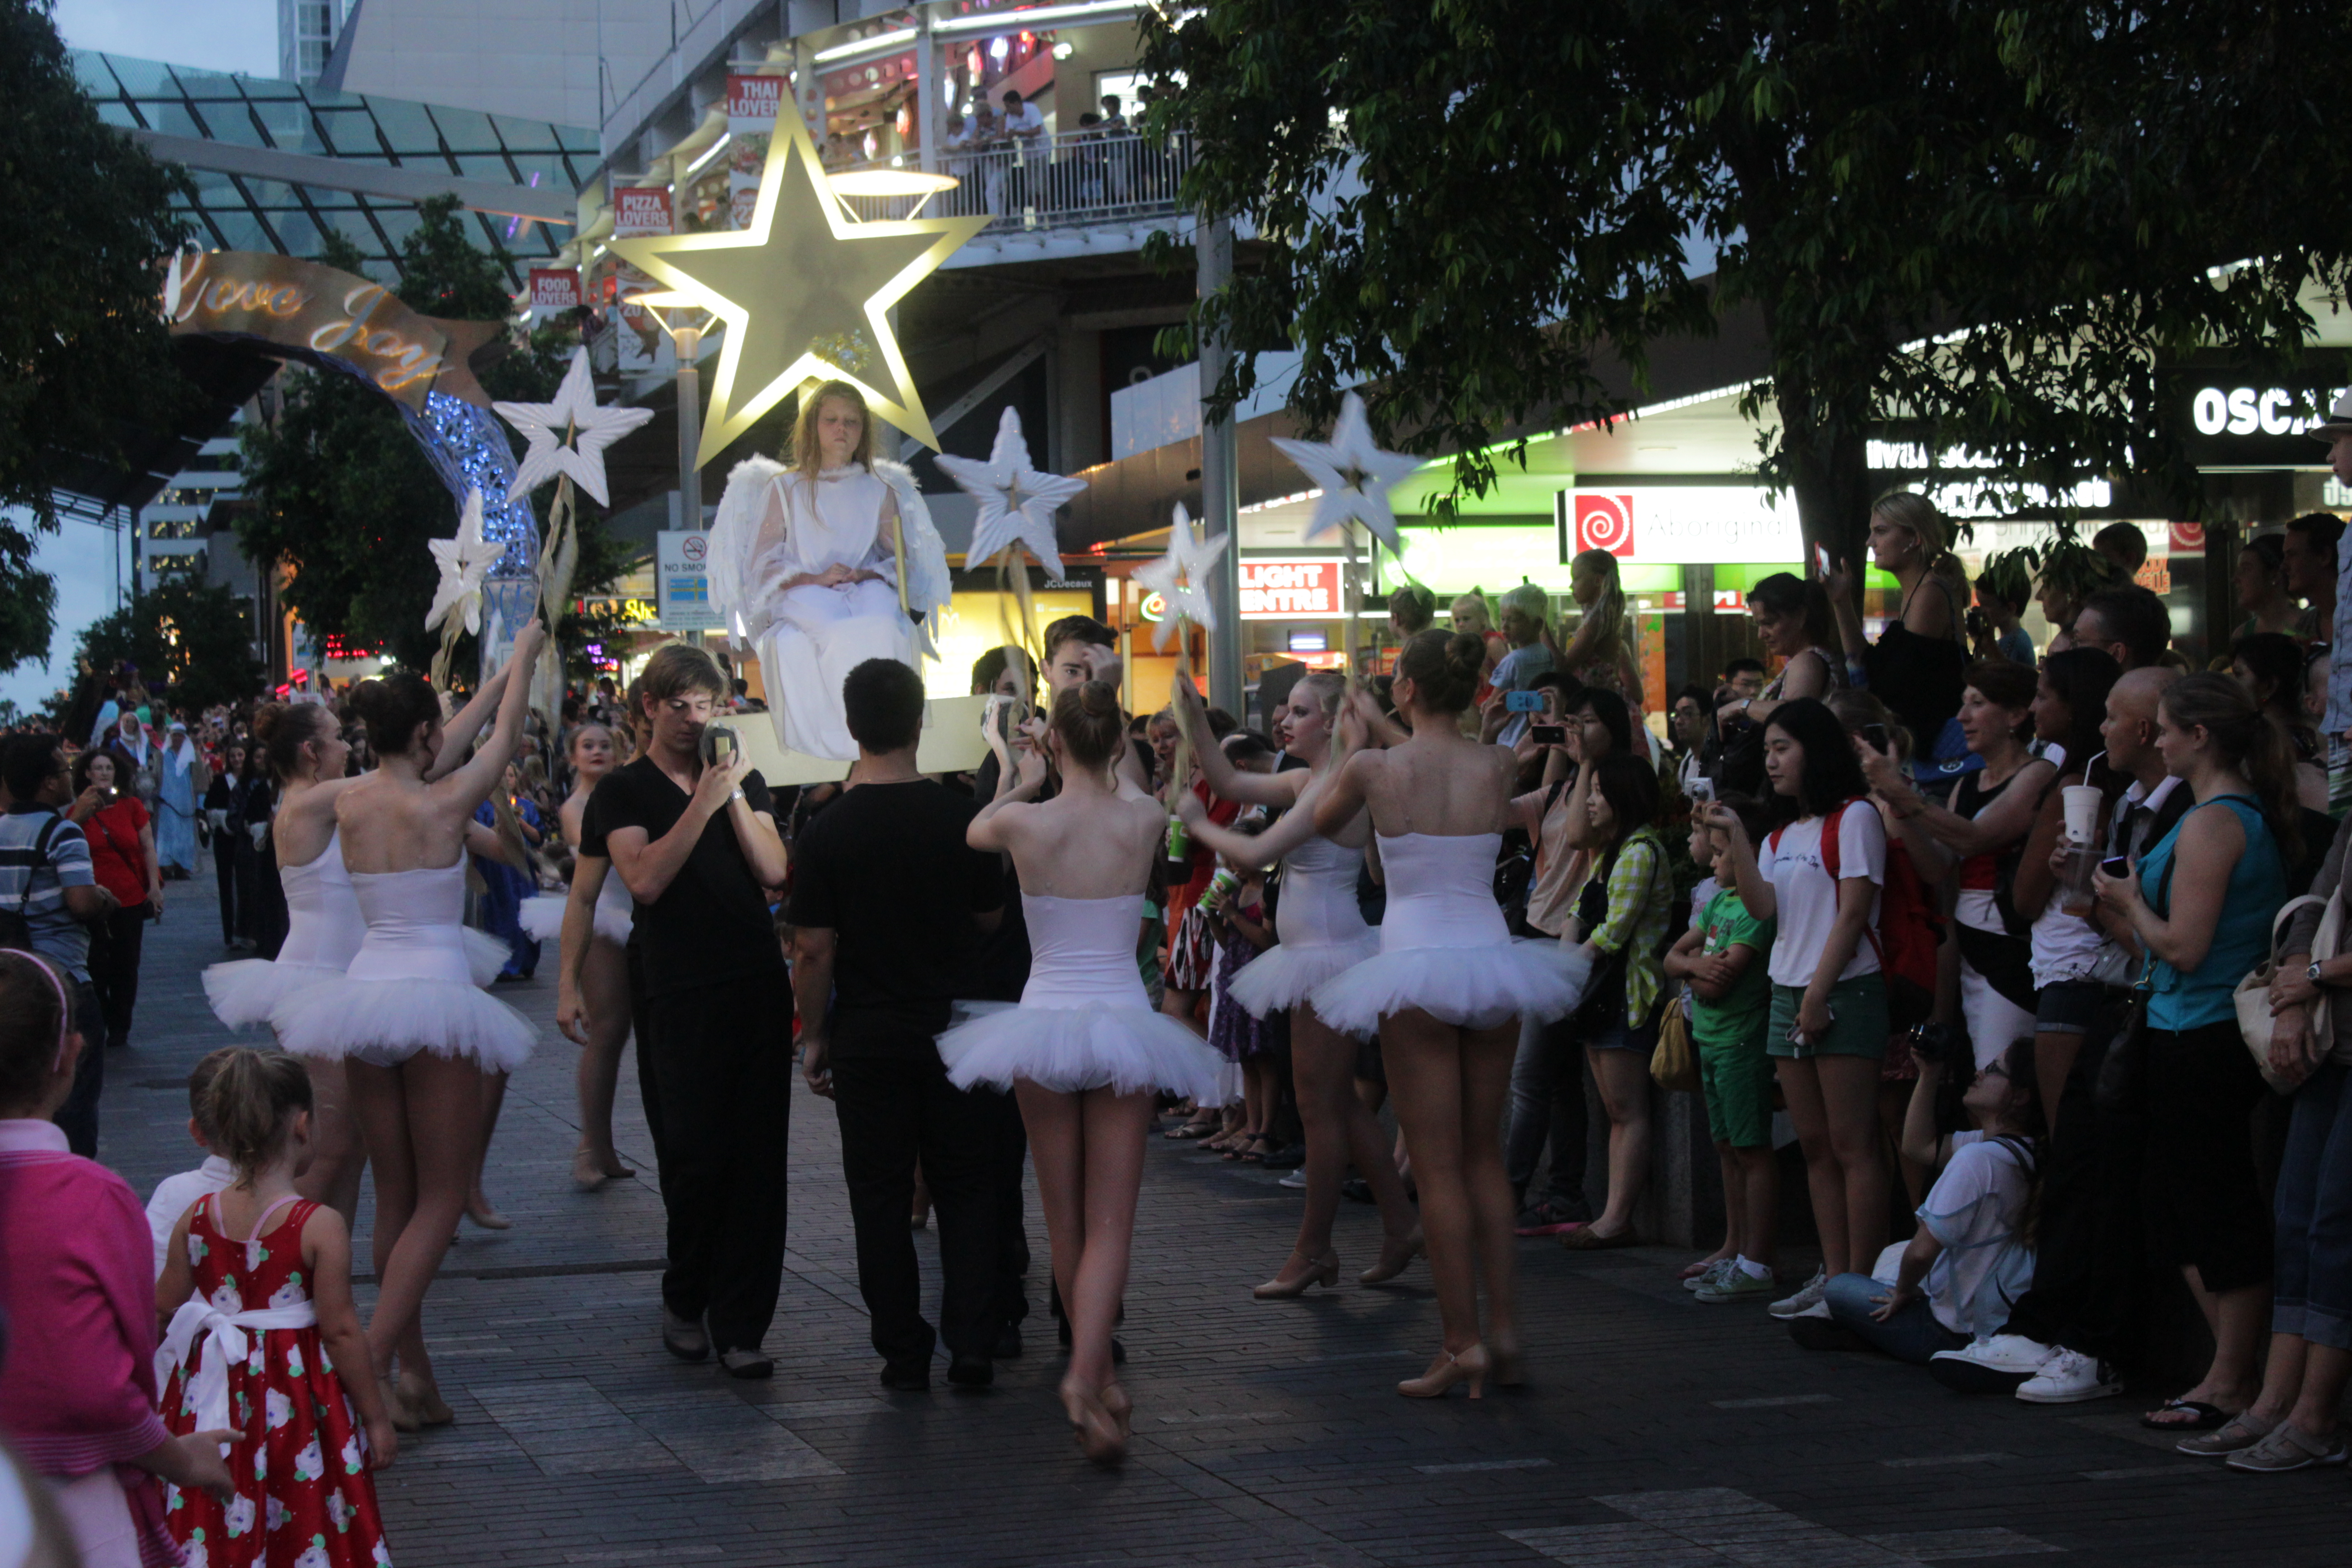 Queen Street Parade in Brisbane